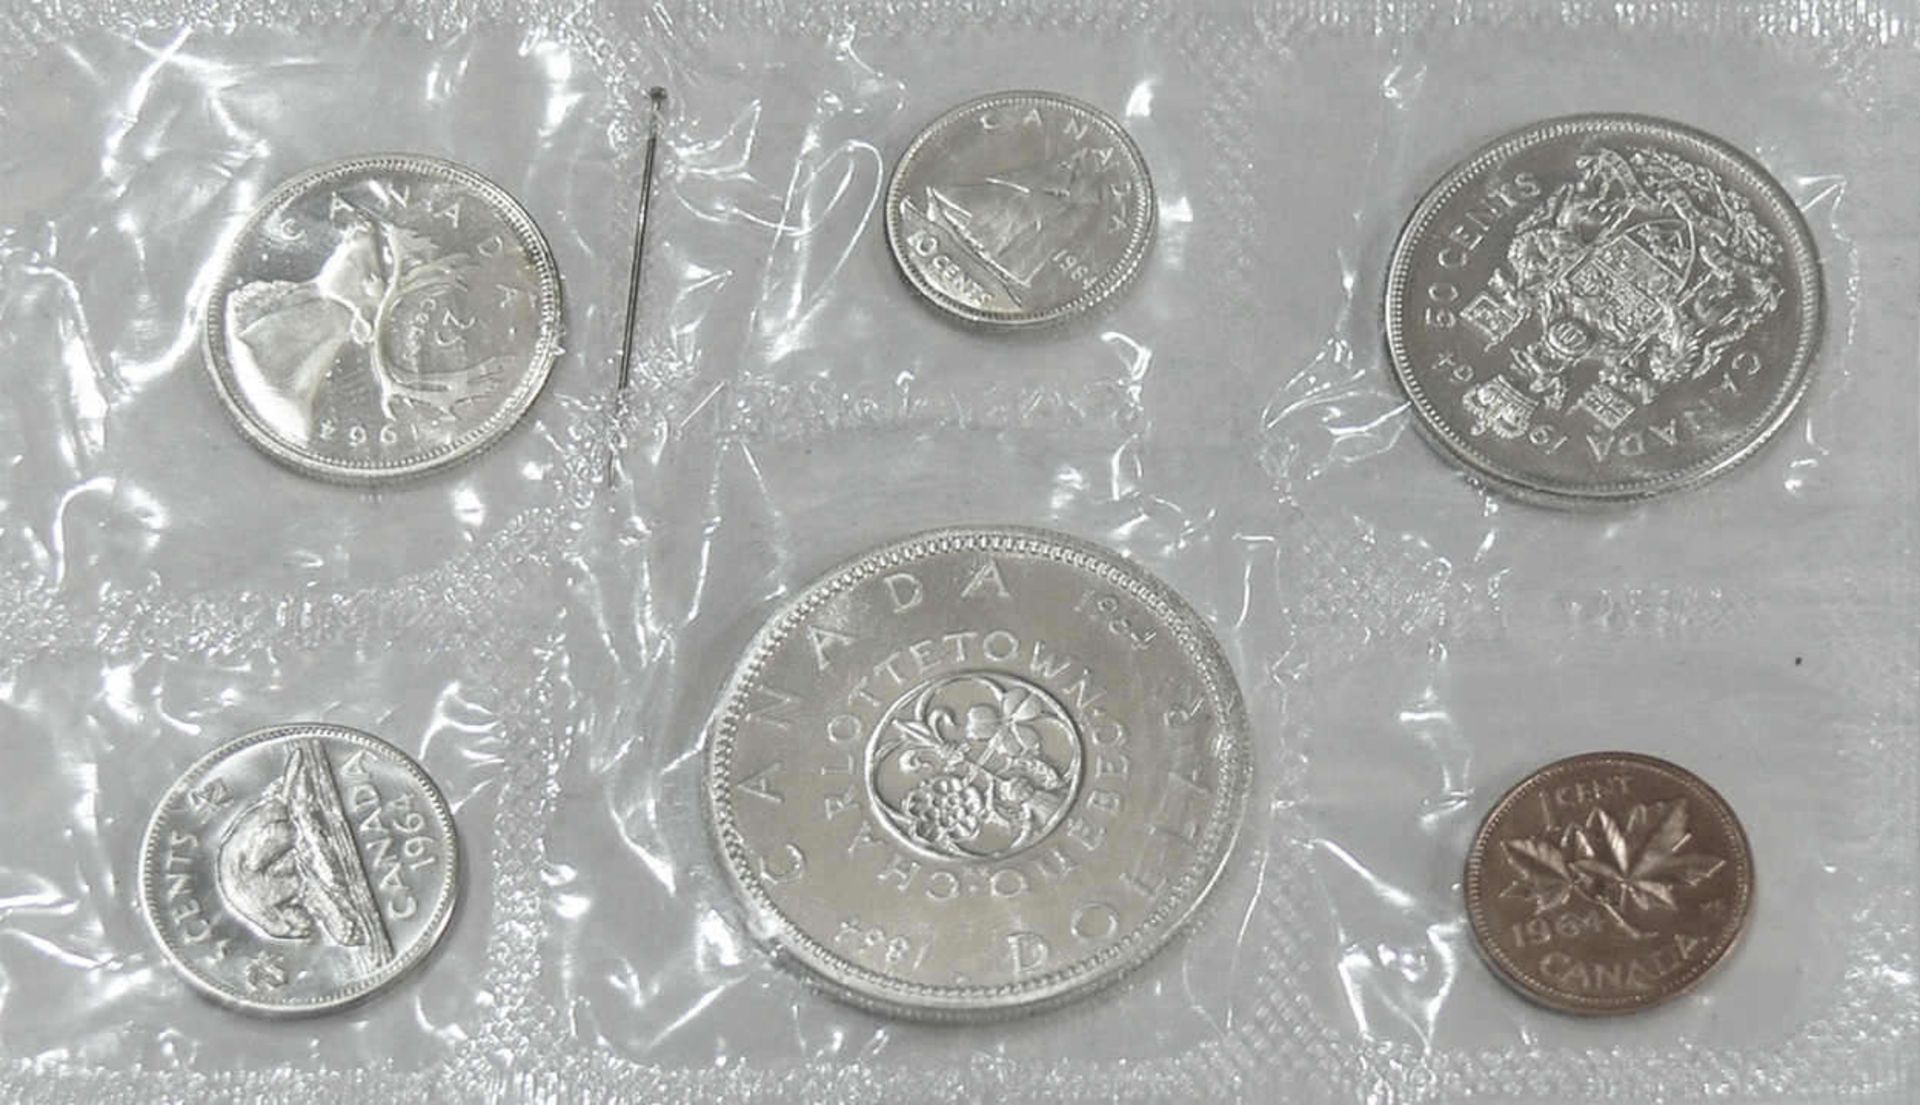 Kanada 1964 , Kursmünzsatz, Silber. Erhaltung: stgl. Canada 1964, exchange rate, silver. - Bild 2 aus 2